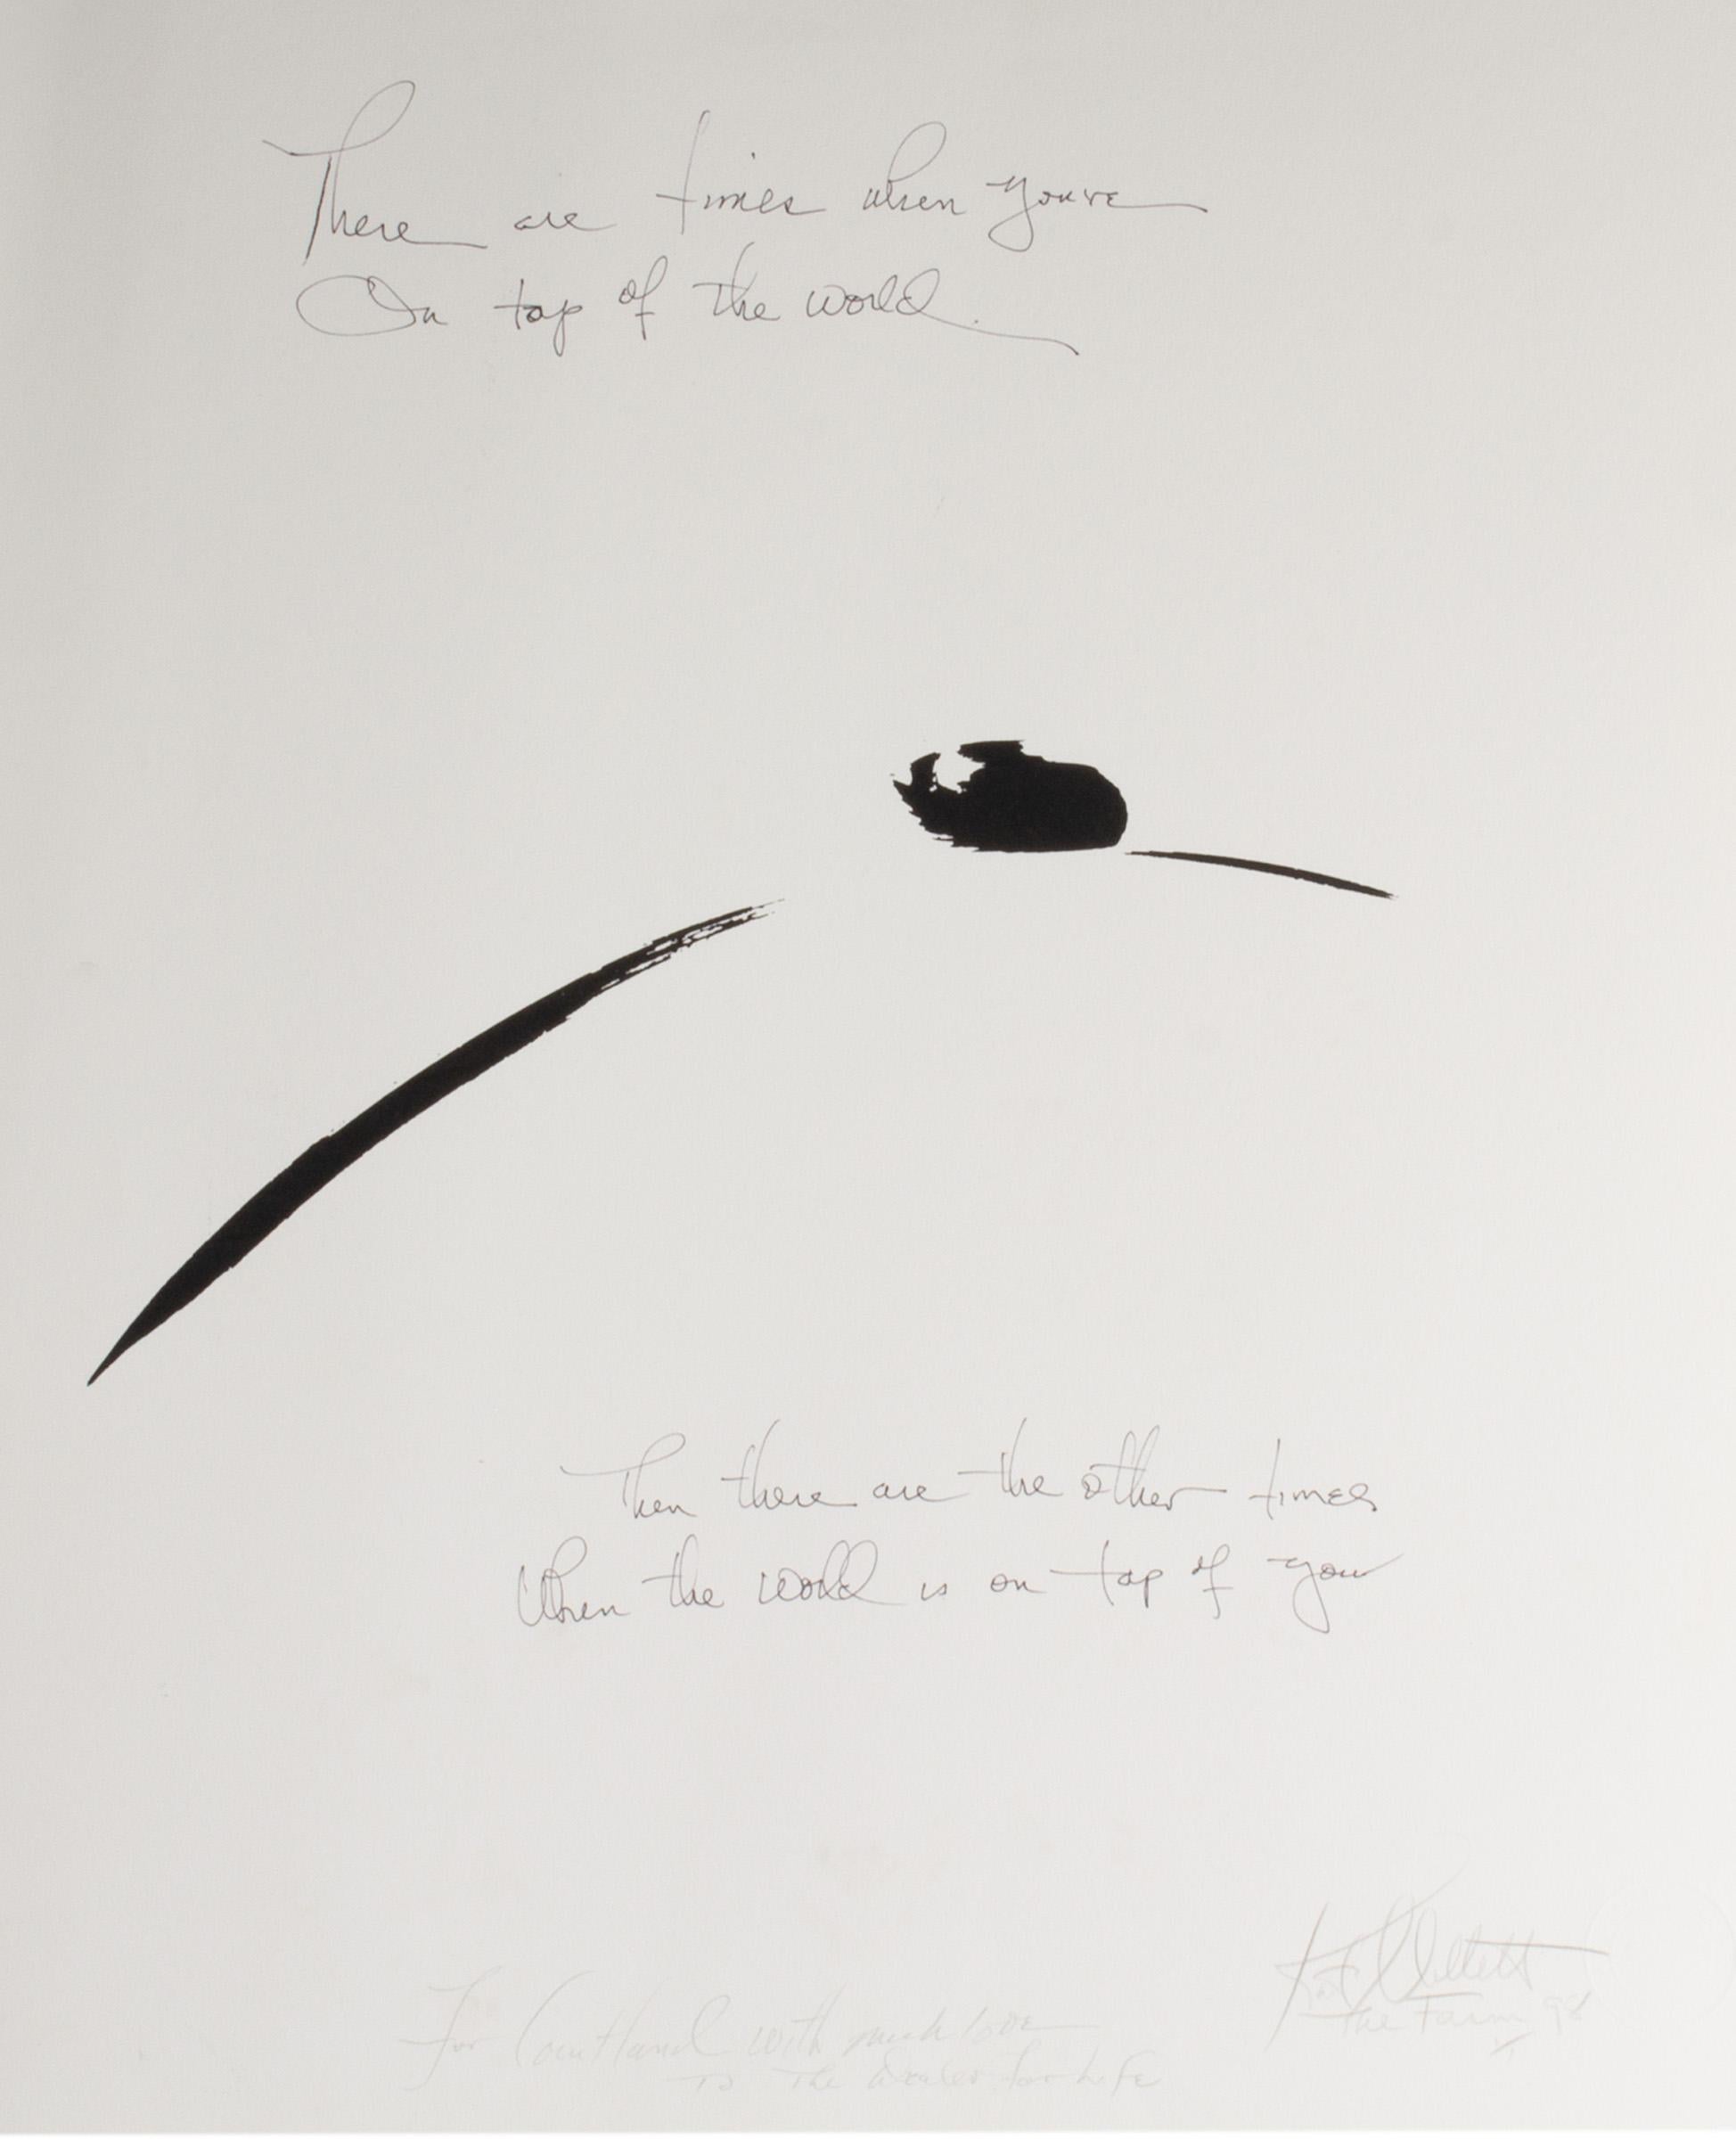 Eine 1998 signierte Lithographie auf Papier der amerikanischen feministischen Schriftstellerin, Theoretikerin, Künstlerin und Wissenschaftlerin Kate Millett (1934 - 2017). Dieses Werk verwendet einen malerischen Stil, um eine abstrahierte und